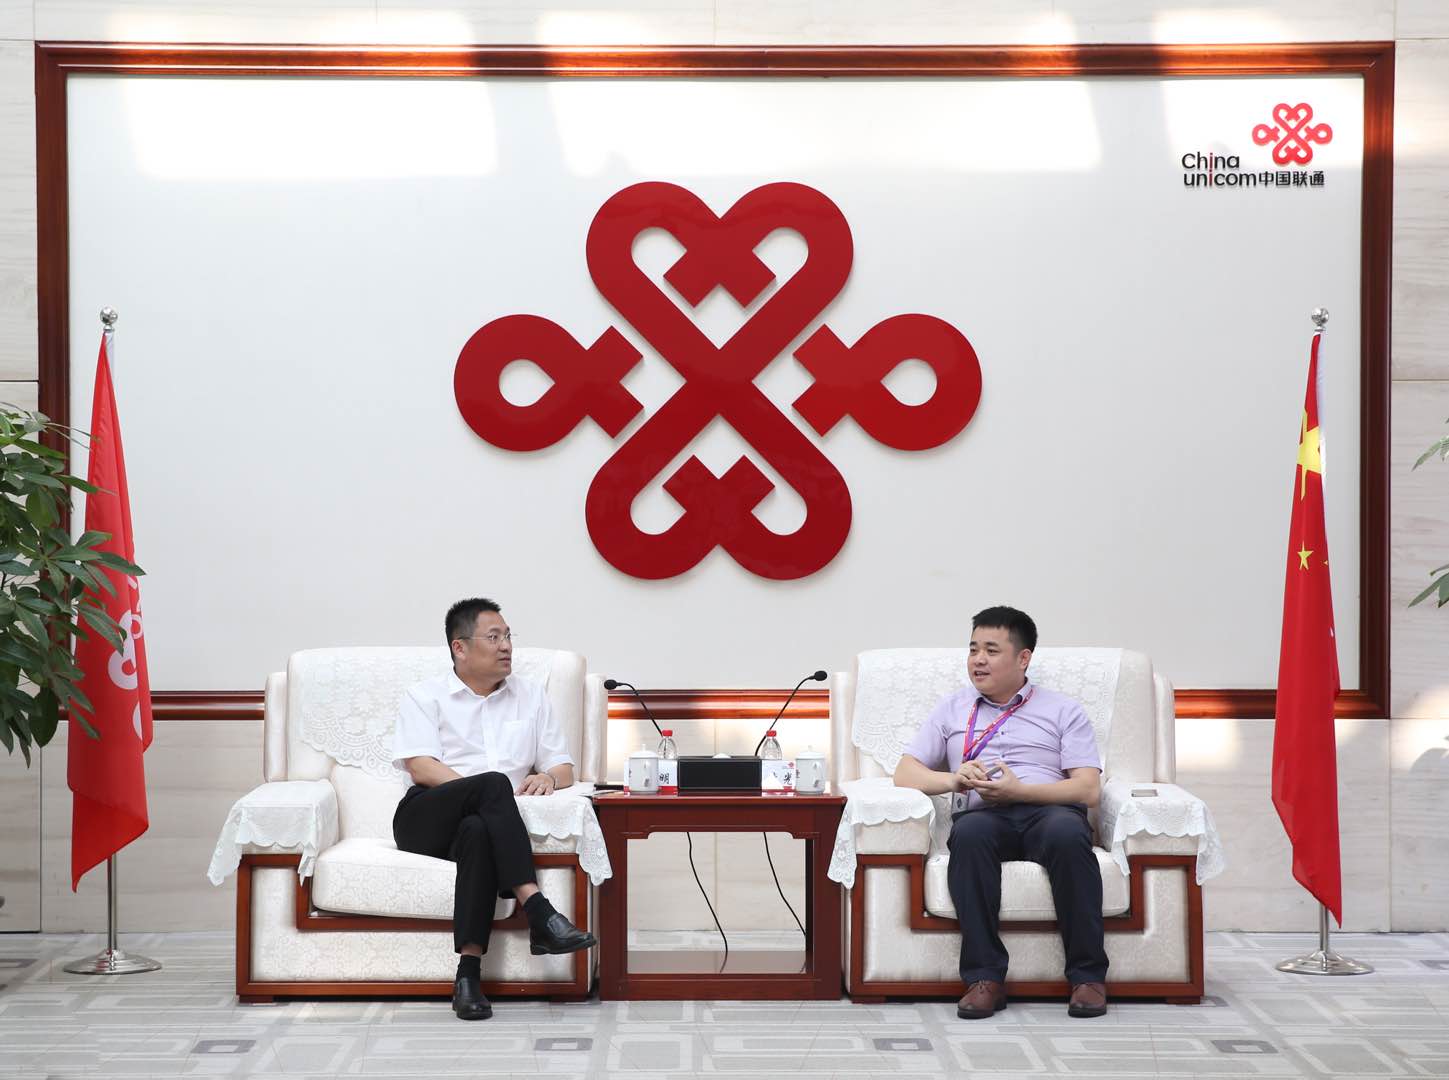 5G+智慧物联 | 赛亿科技与中国联通深圳分公司签署战略合作协议